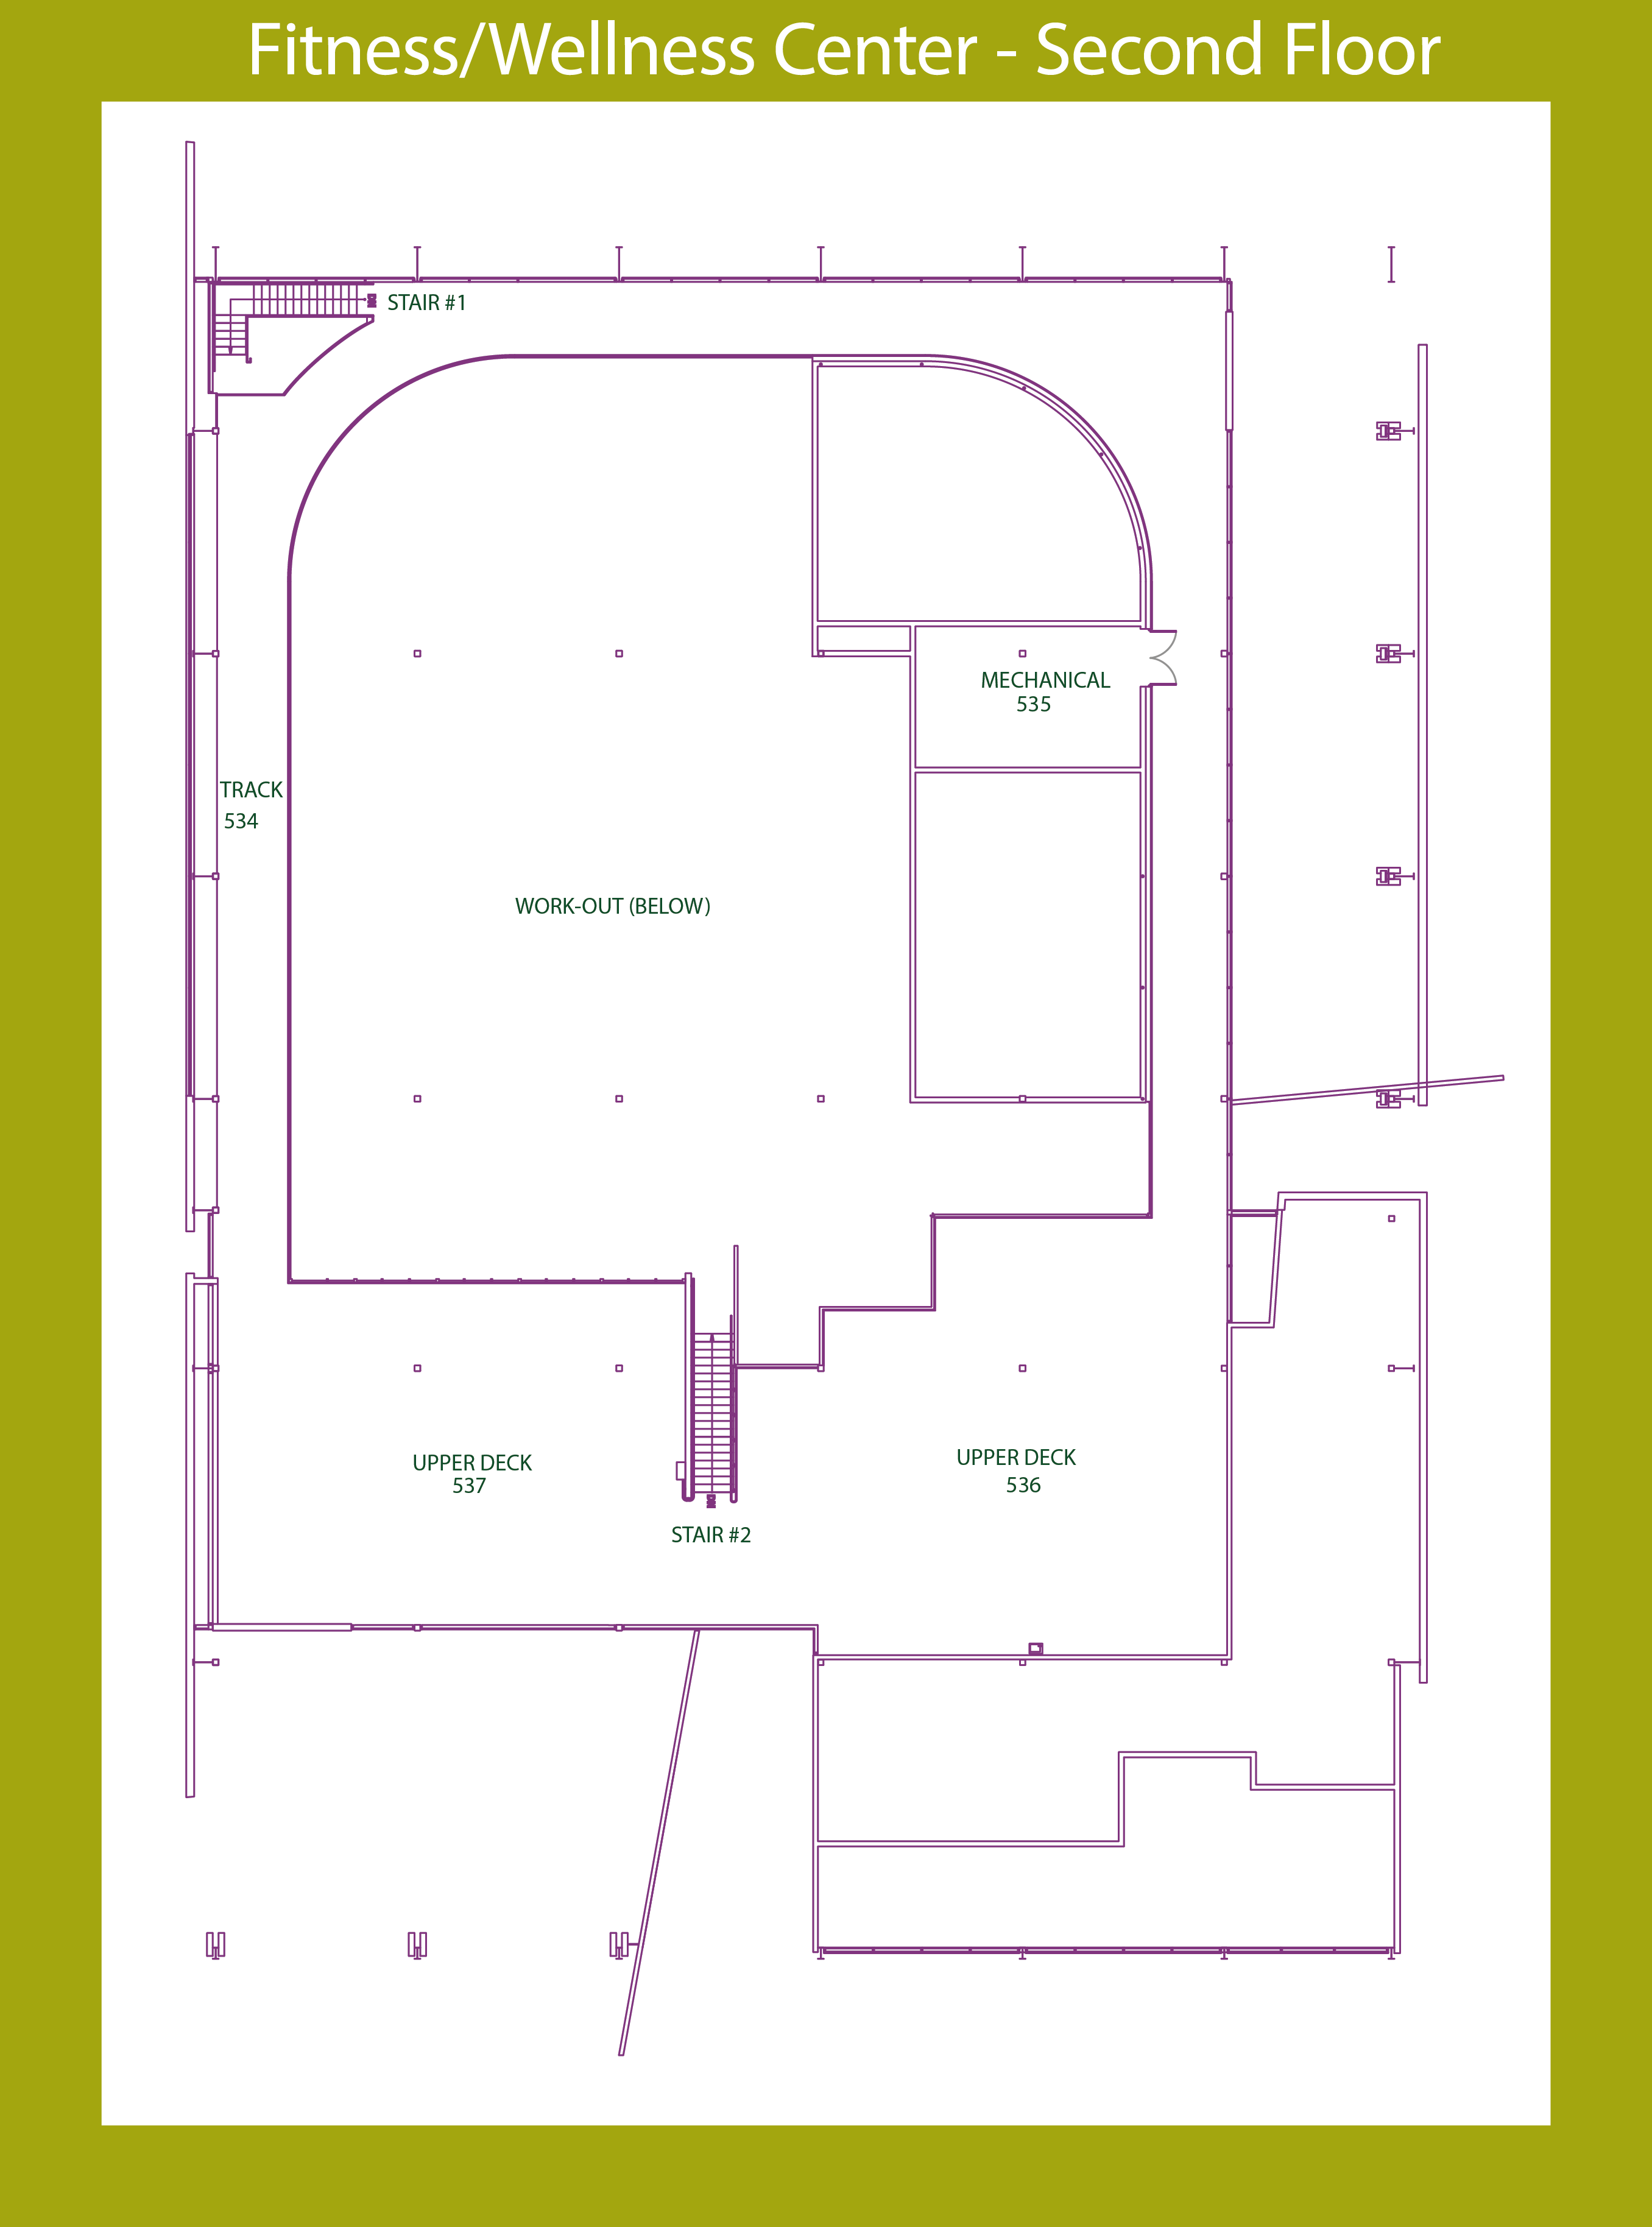 FWC floor plan - second floor